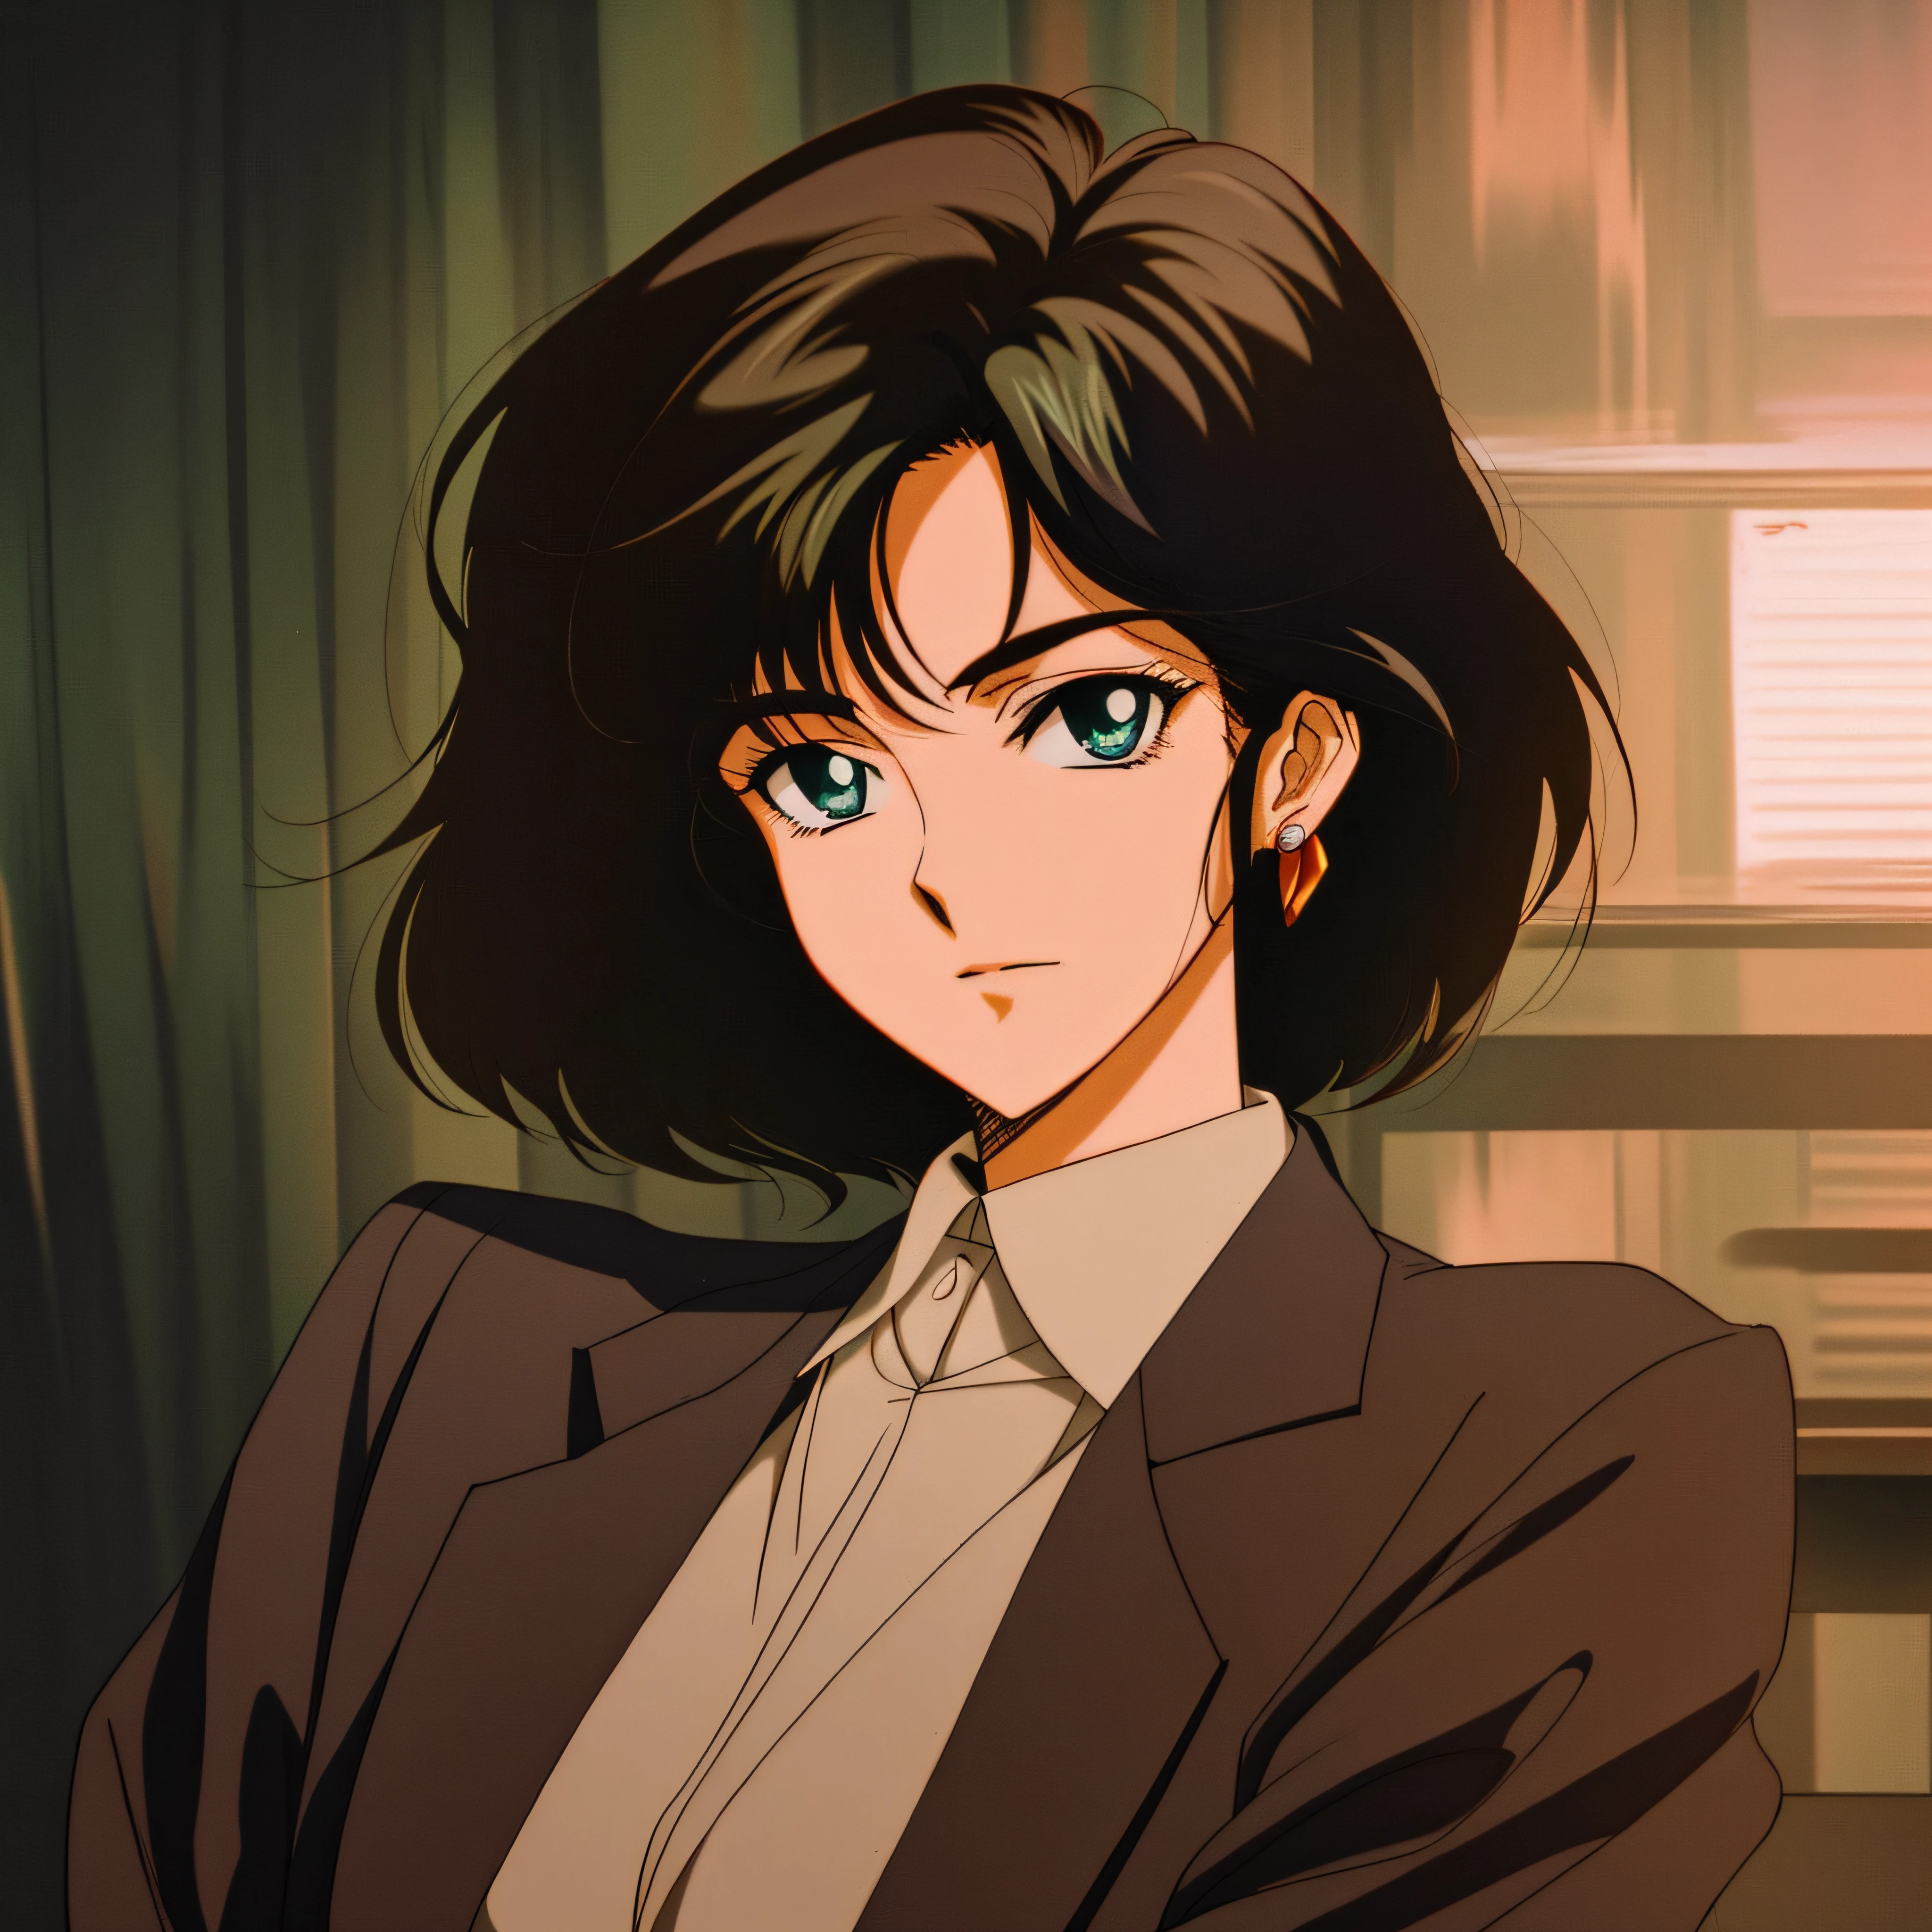 Аниме образ женщины в костюме и галстуке, сидя в кресле, в художественном стиле аниме 80-х, 8 0 s аниме арт стиль, 1980's anime style, Фубуки, ретро аниме девушка, 90-е годы аниме арт стиль, Портрет Лофи, 8 0 е в стиле аниме, ретро аниме изображение, как на картинке, глаза зеленого цвета, рыжие волосы